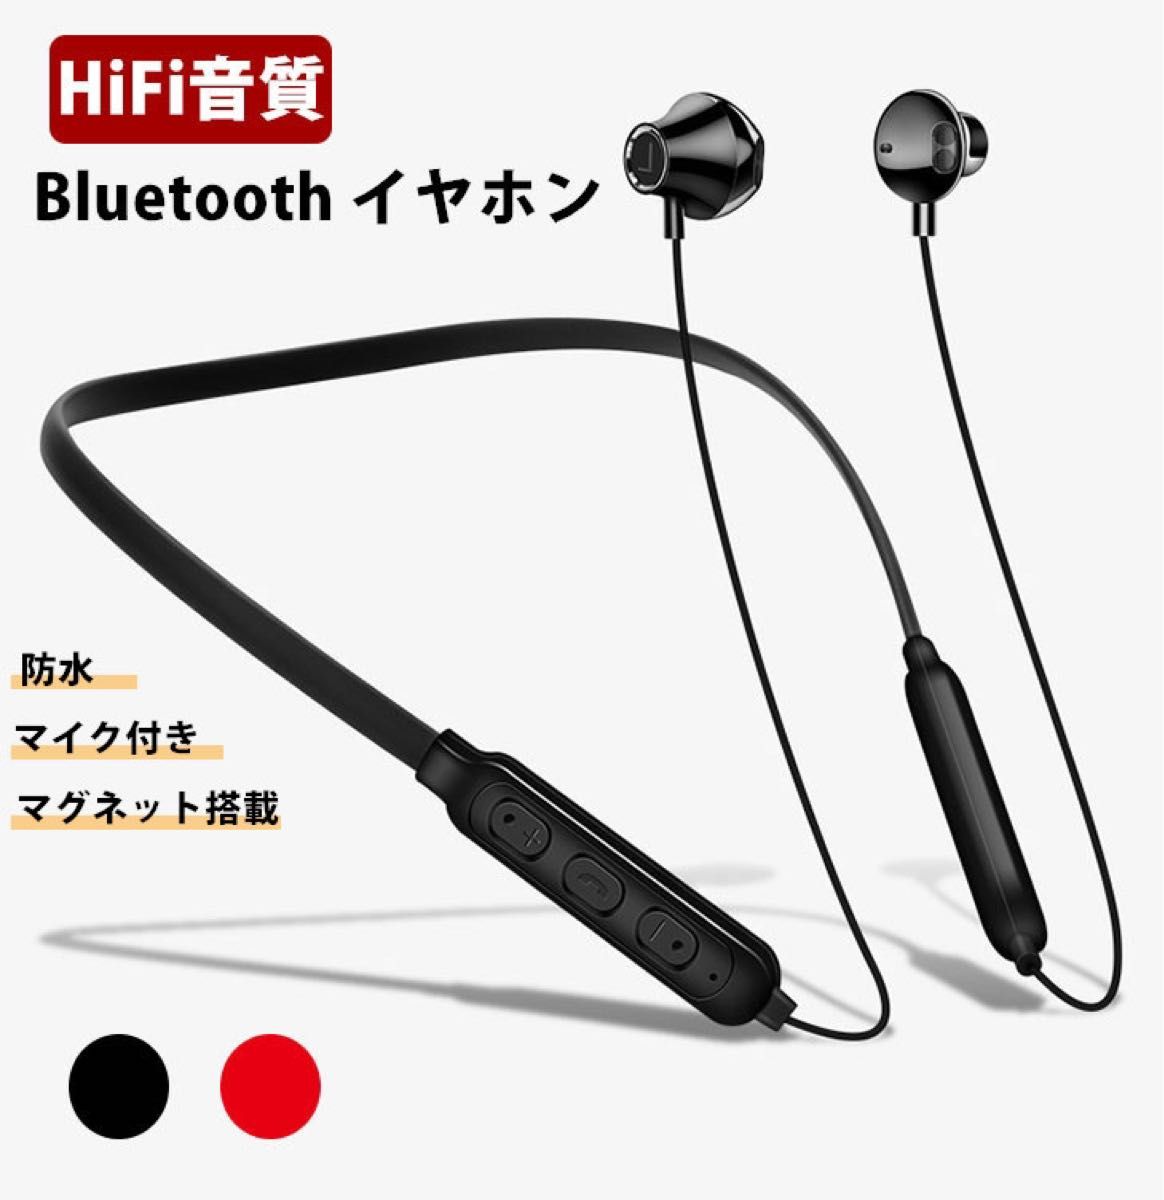 Bluetooth4.2 スポーツ ワイヤレスイヤホン HiFi 高音質 内蔵マイク マグネット搭載 防水 長時間再生